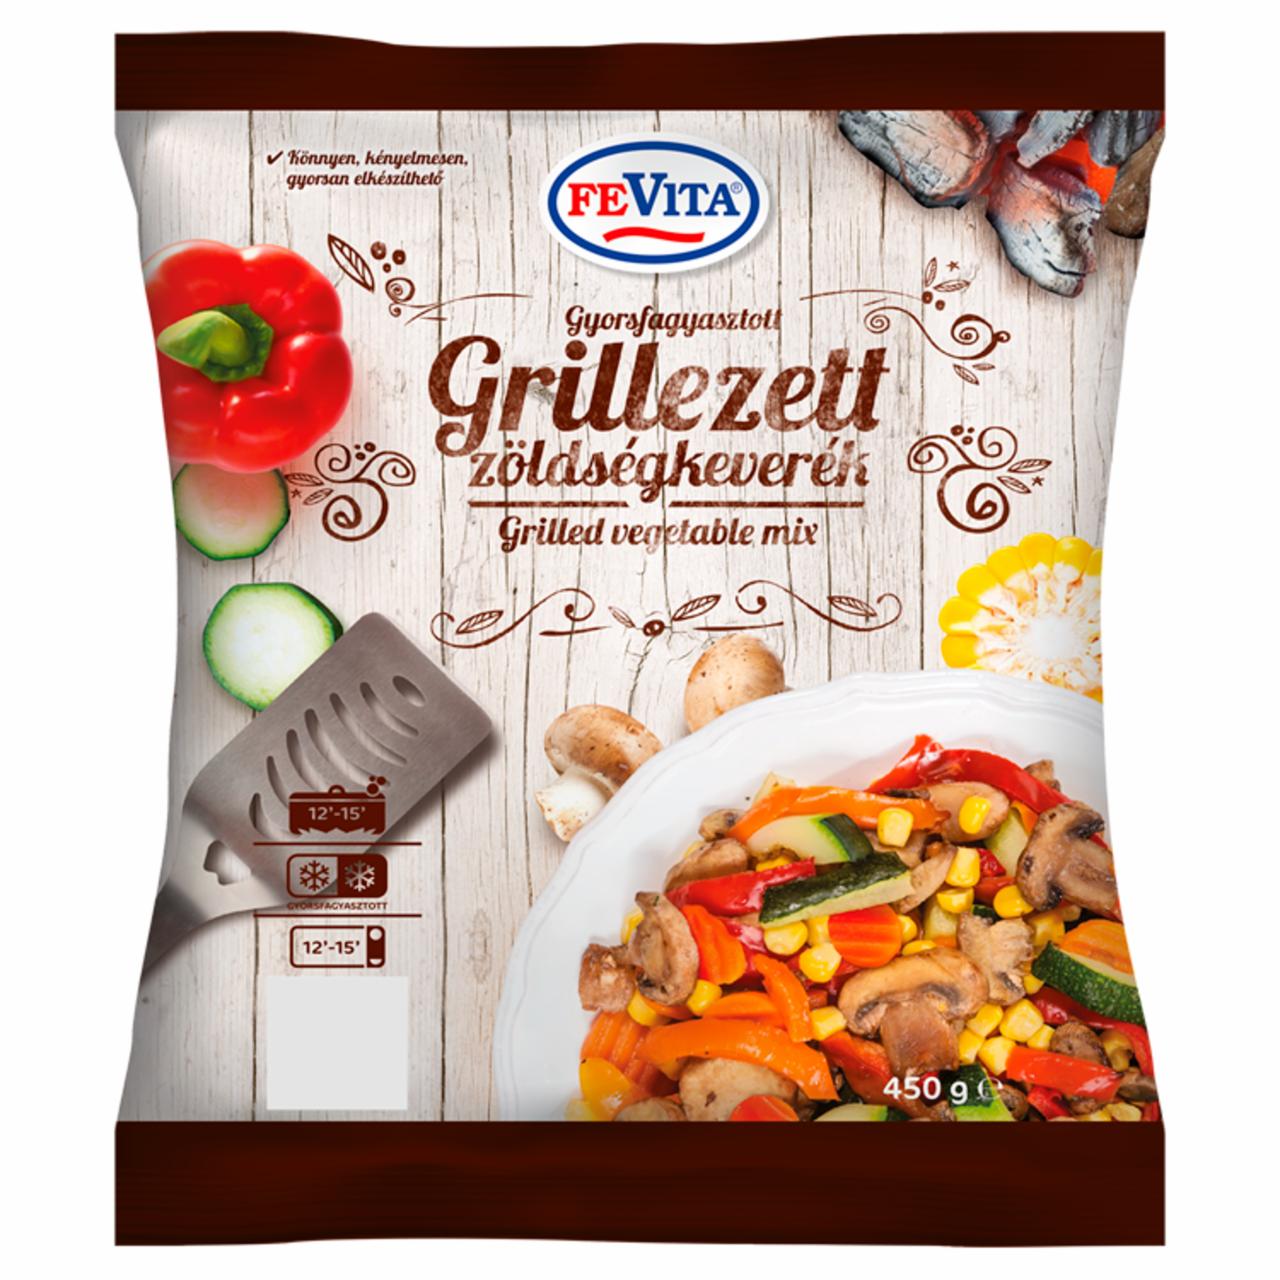 Képek - FeVita gyorsfagyasztott grillezett zöldségkeverék 450 g